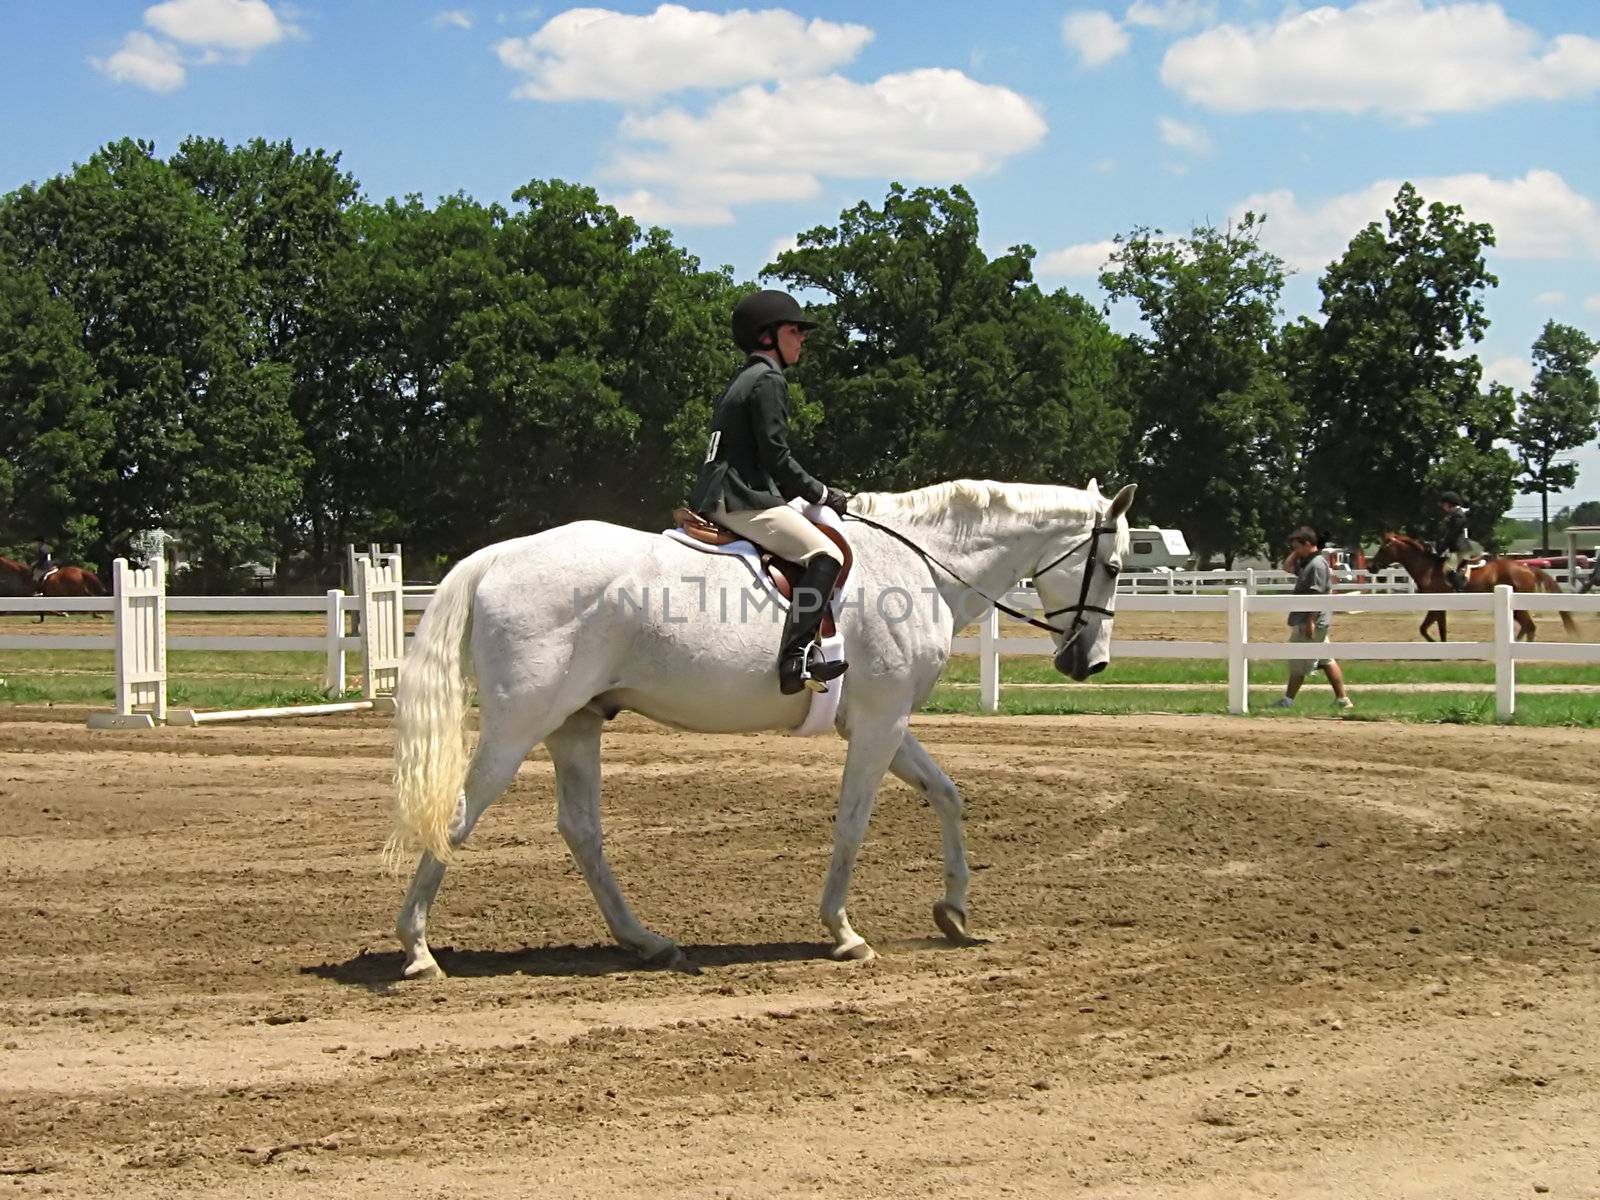 Horse & Rider by llyr8